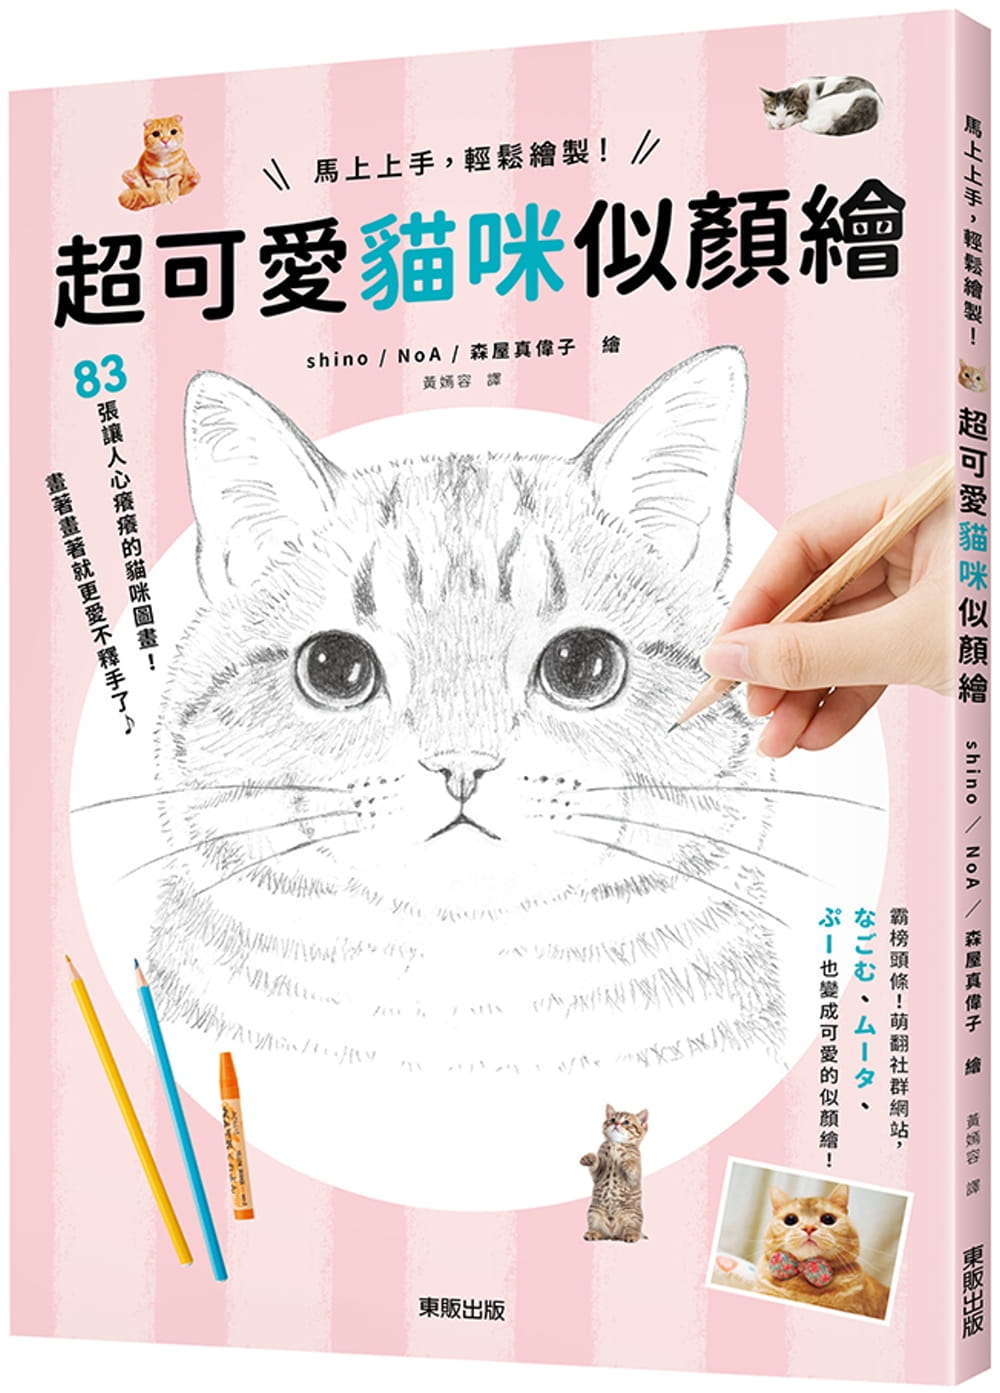 预售 shino马上上手，轻松绘制！超可爱猫咪似颜绘中国台湾东贩原版进口书艺术设计